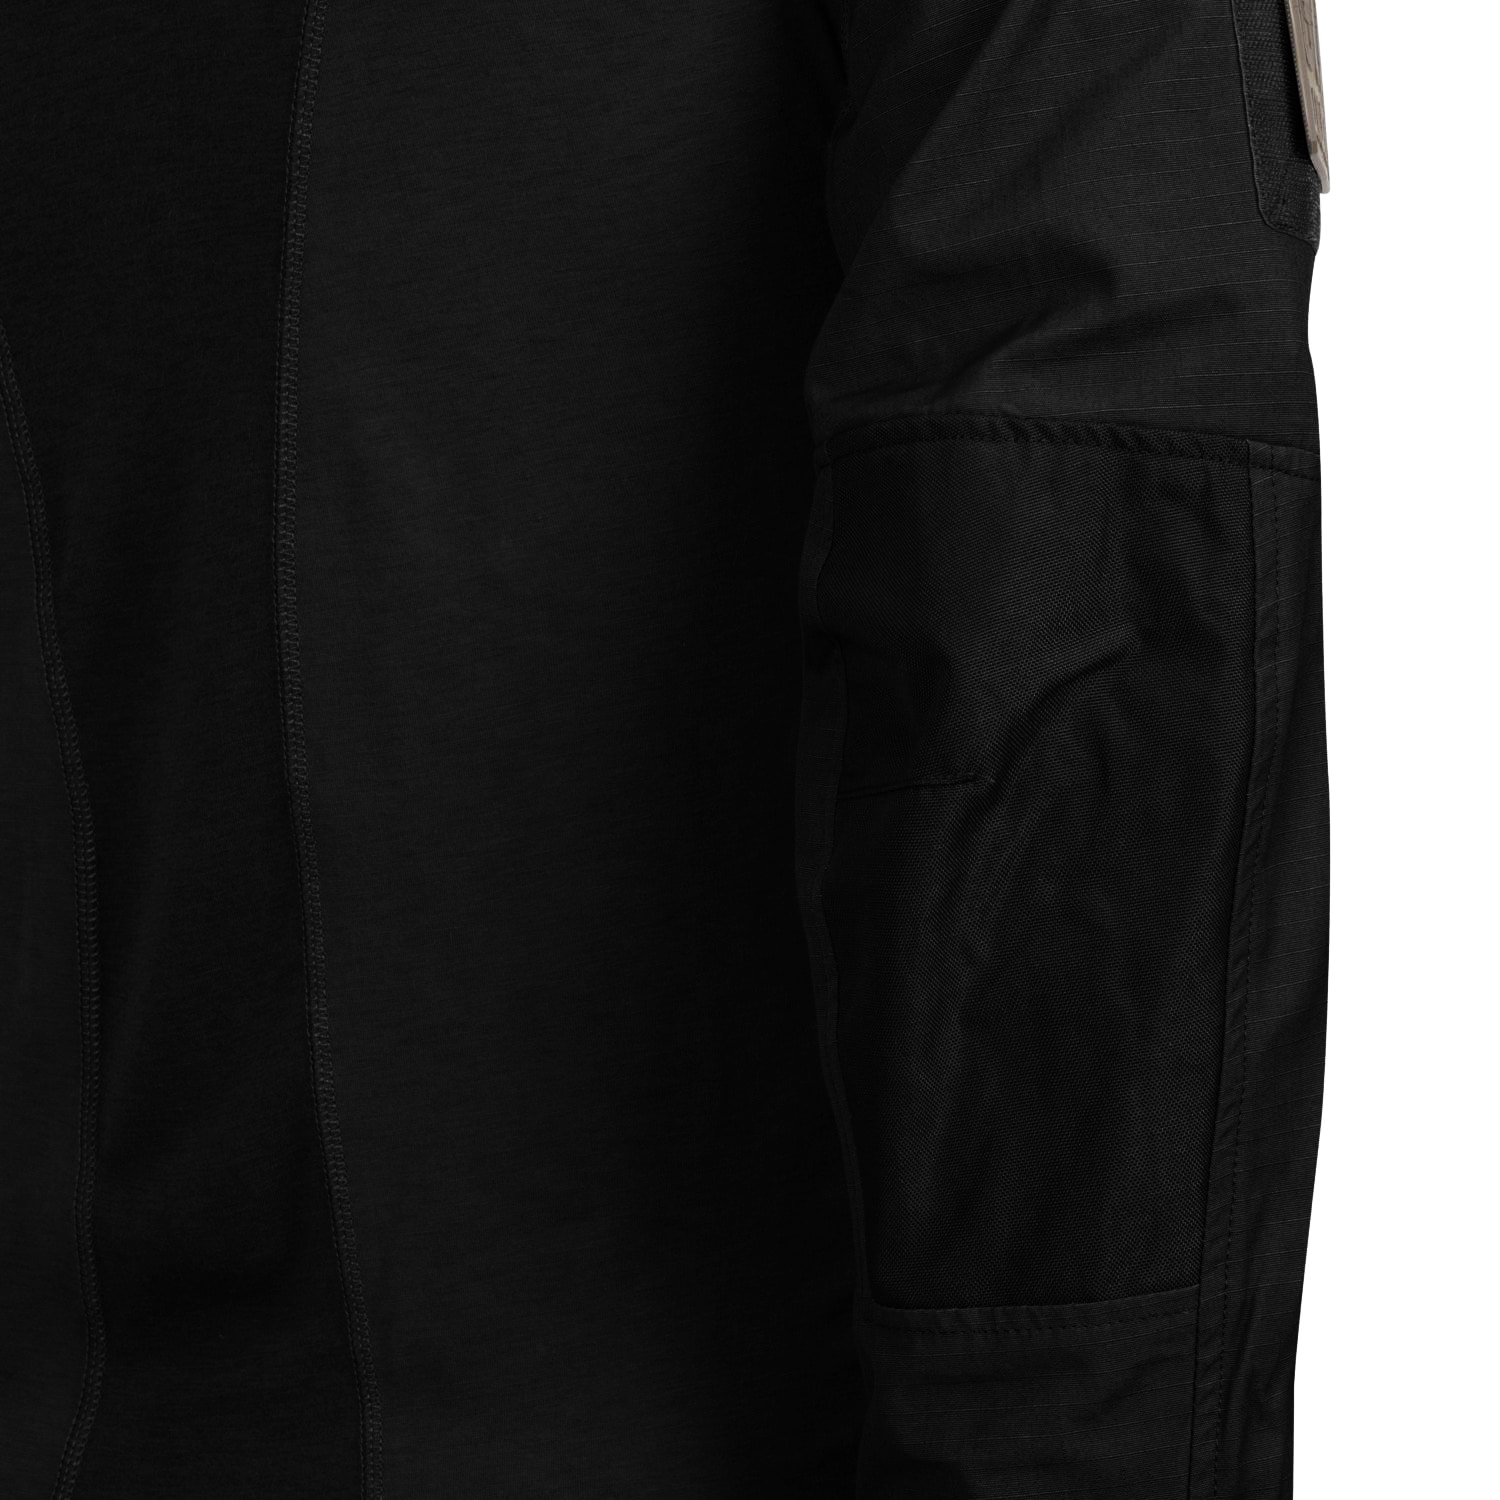 Bluza Direct Action Combat Shirt Vanguard - Black 